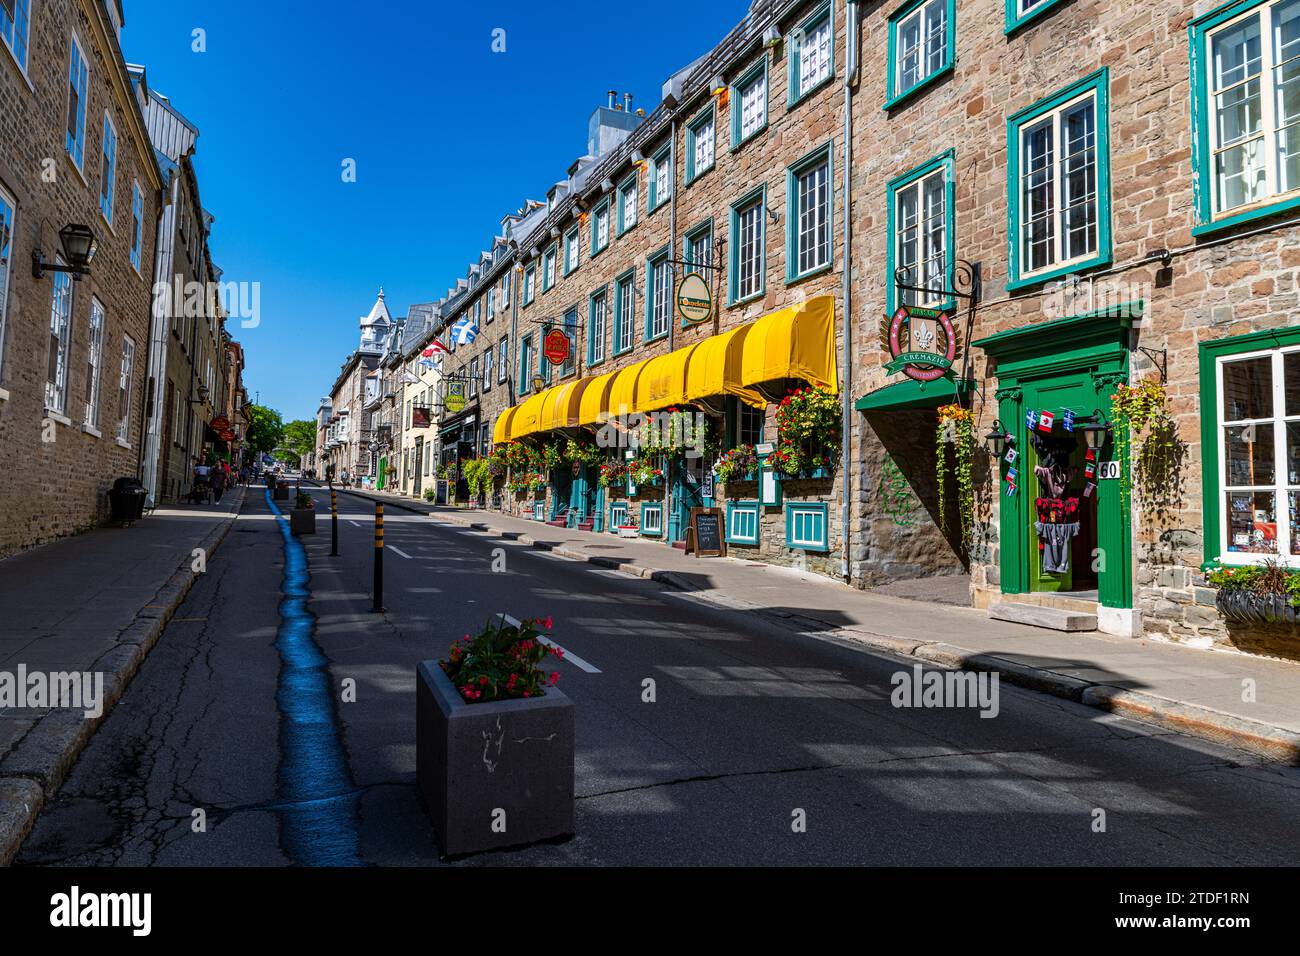 Vieille ville, site du patrimoine mondial de l'UNESCO, Québec, Québec, Canada, Amérique du Nord Banque D'Images